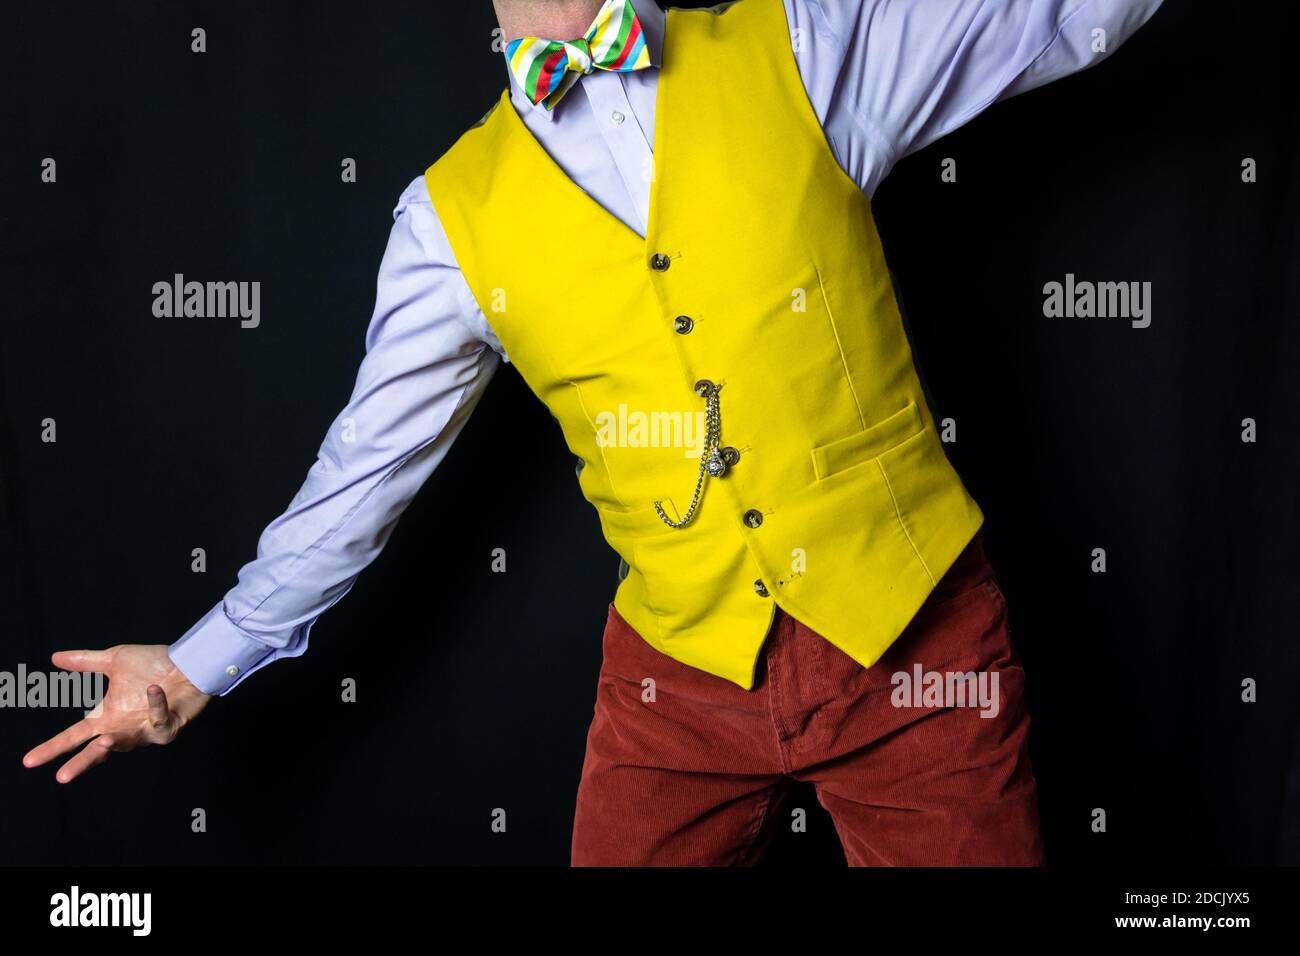 Retrato del hombre en un chaleco amarillo brillante en una postura dramática Foto de stock